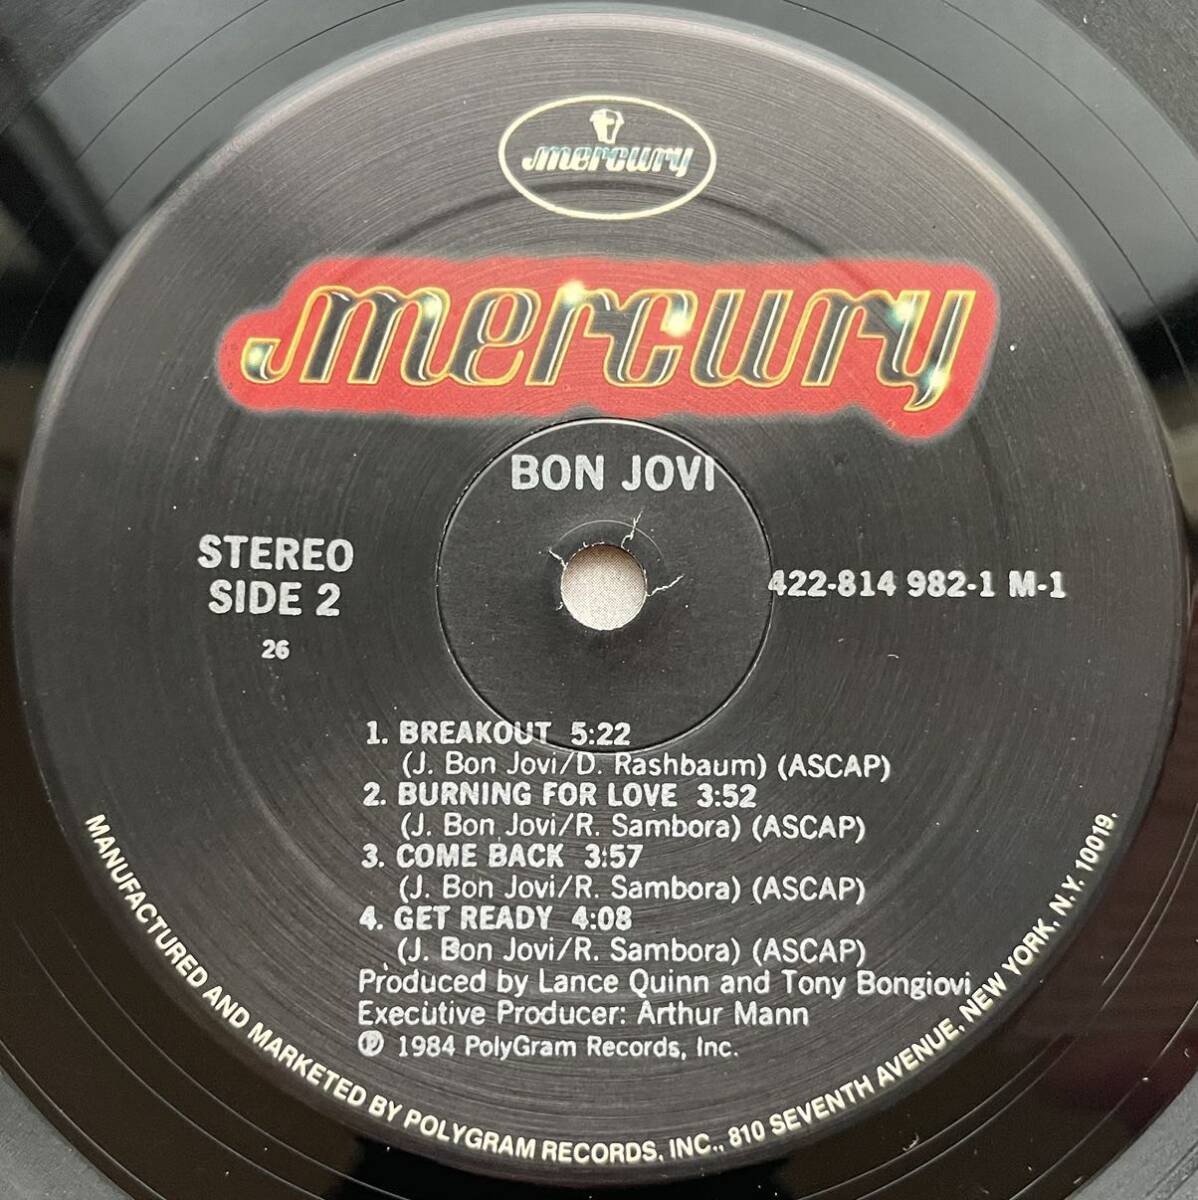 Bon JoviオリジナルUS盤Runaway収録12inch盤その他にもプロモーション盤 レア盤 人気レコード 多数出品。の画像5